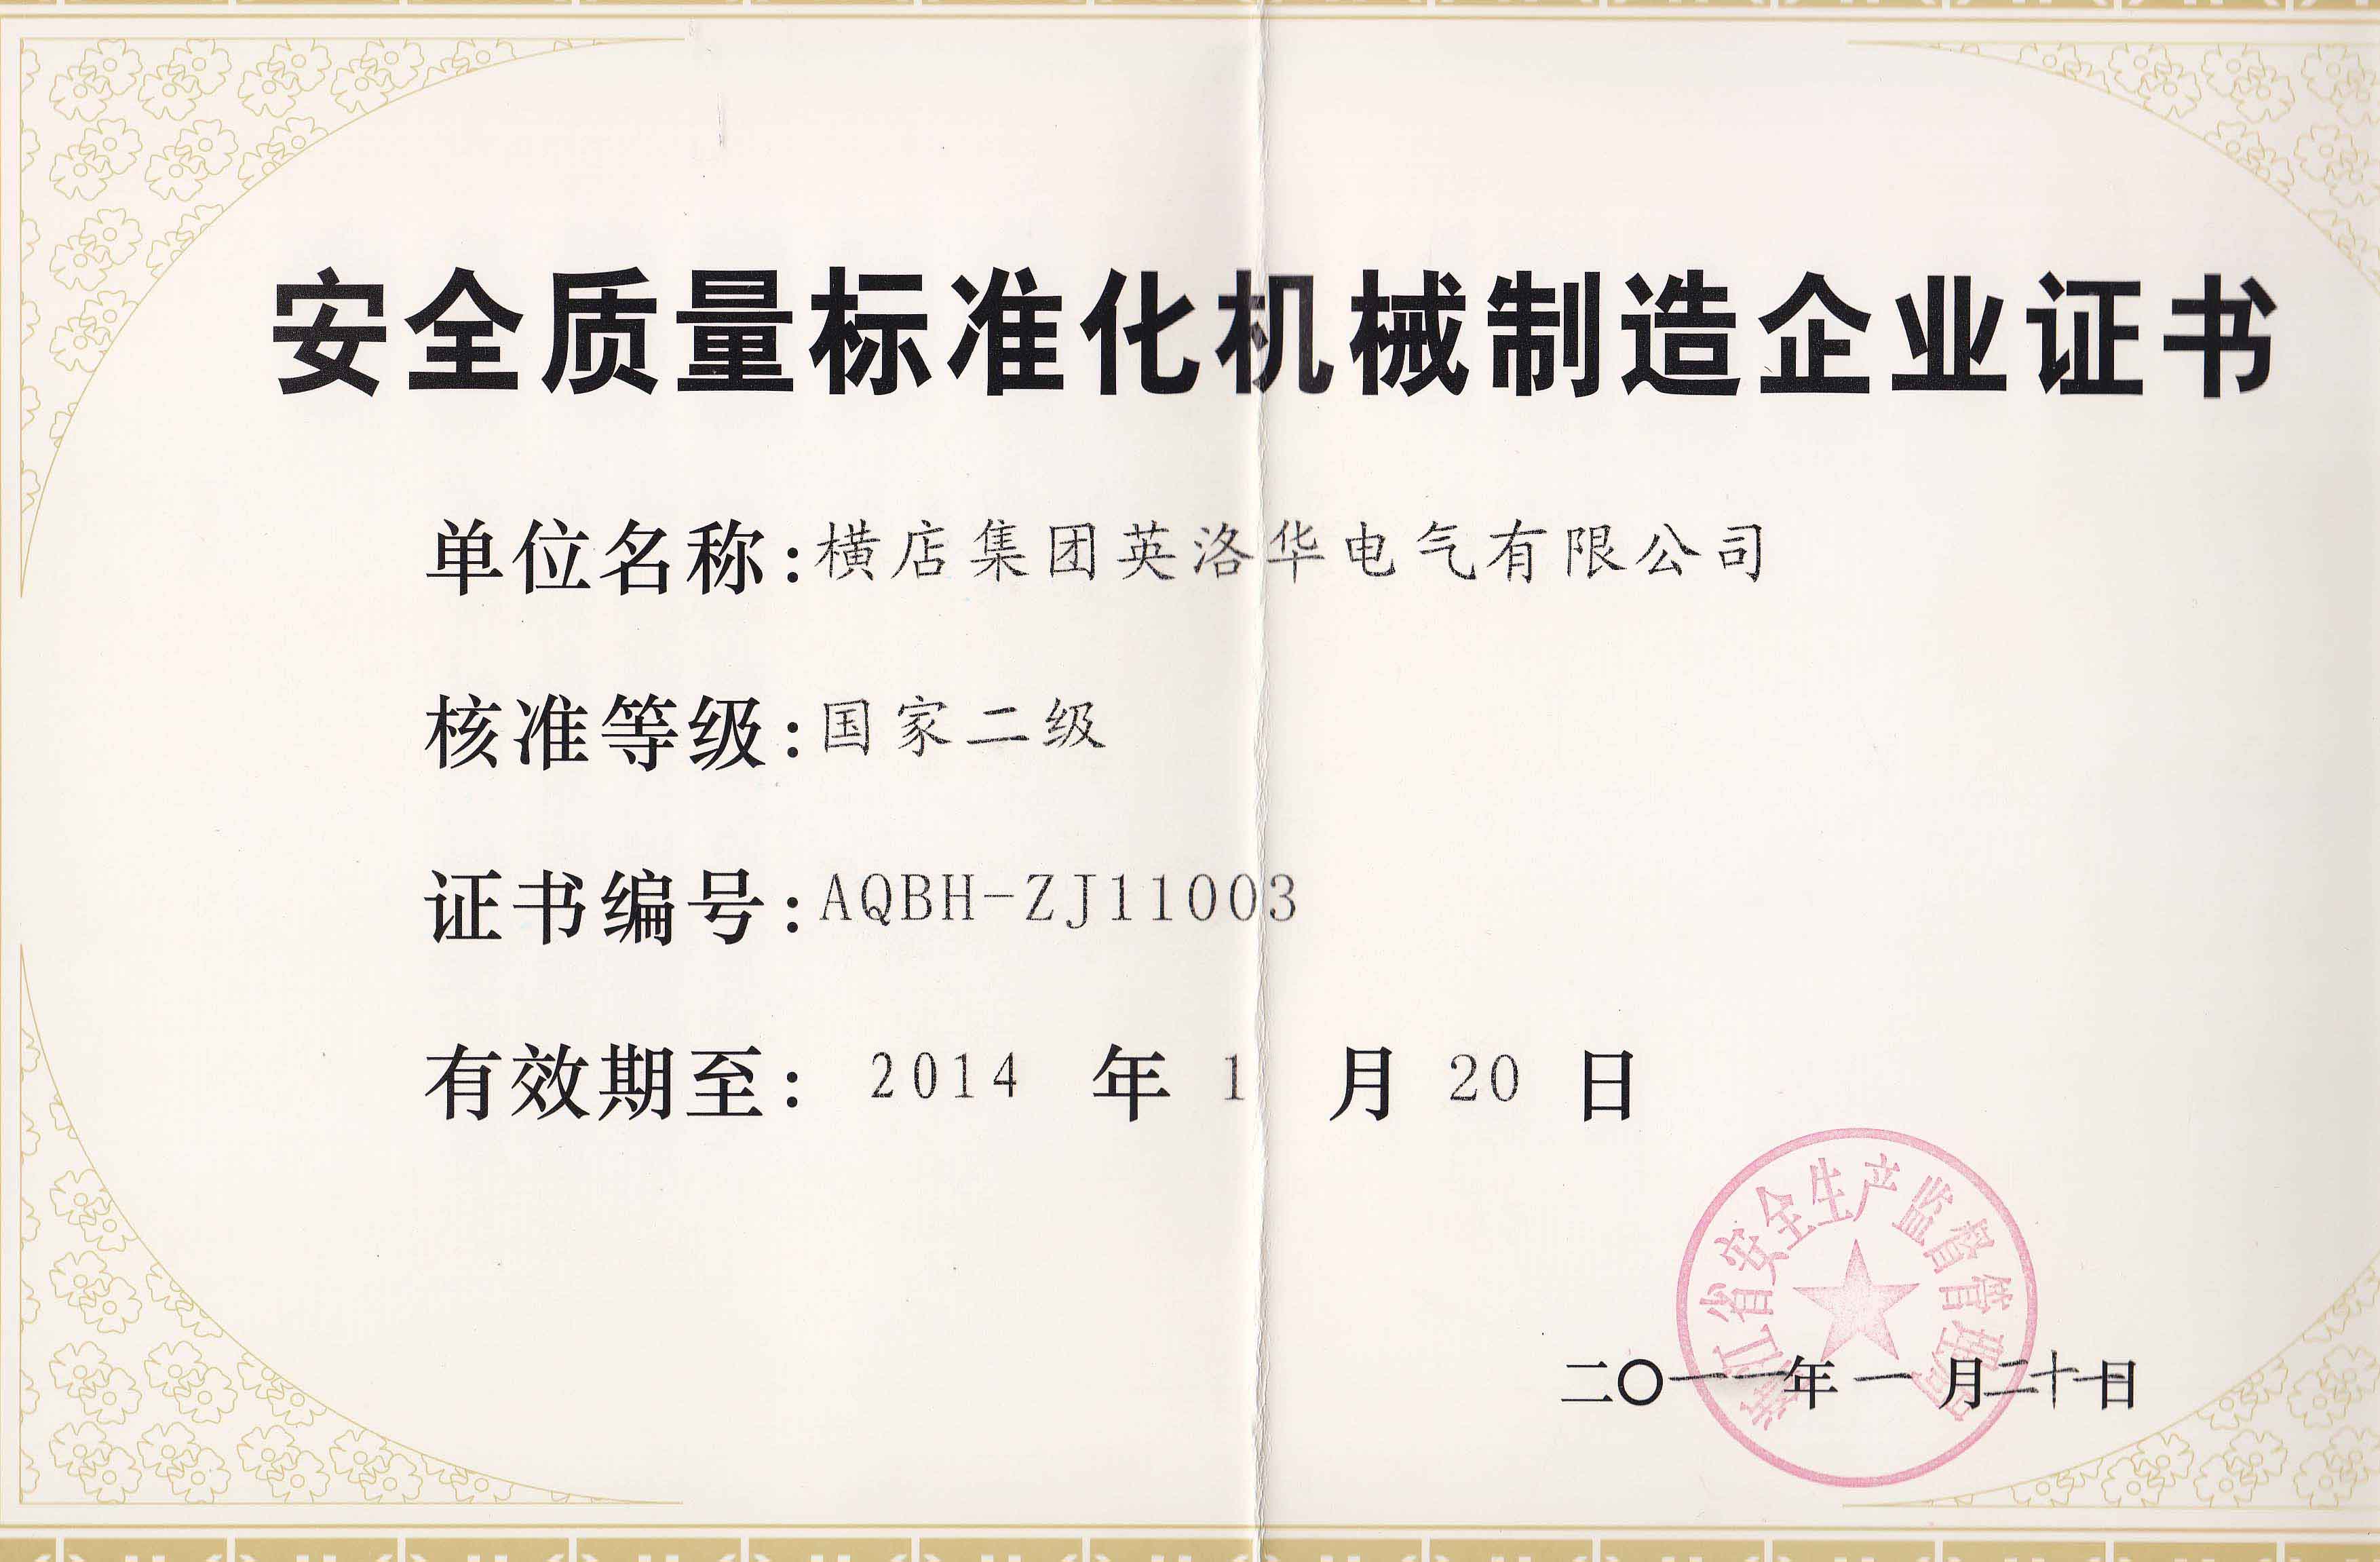 Certificado de empresa de fabricación de maquinaria para la normalización de la calidad de la seguridad